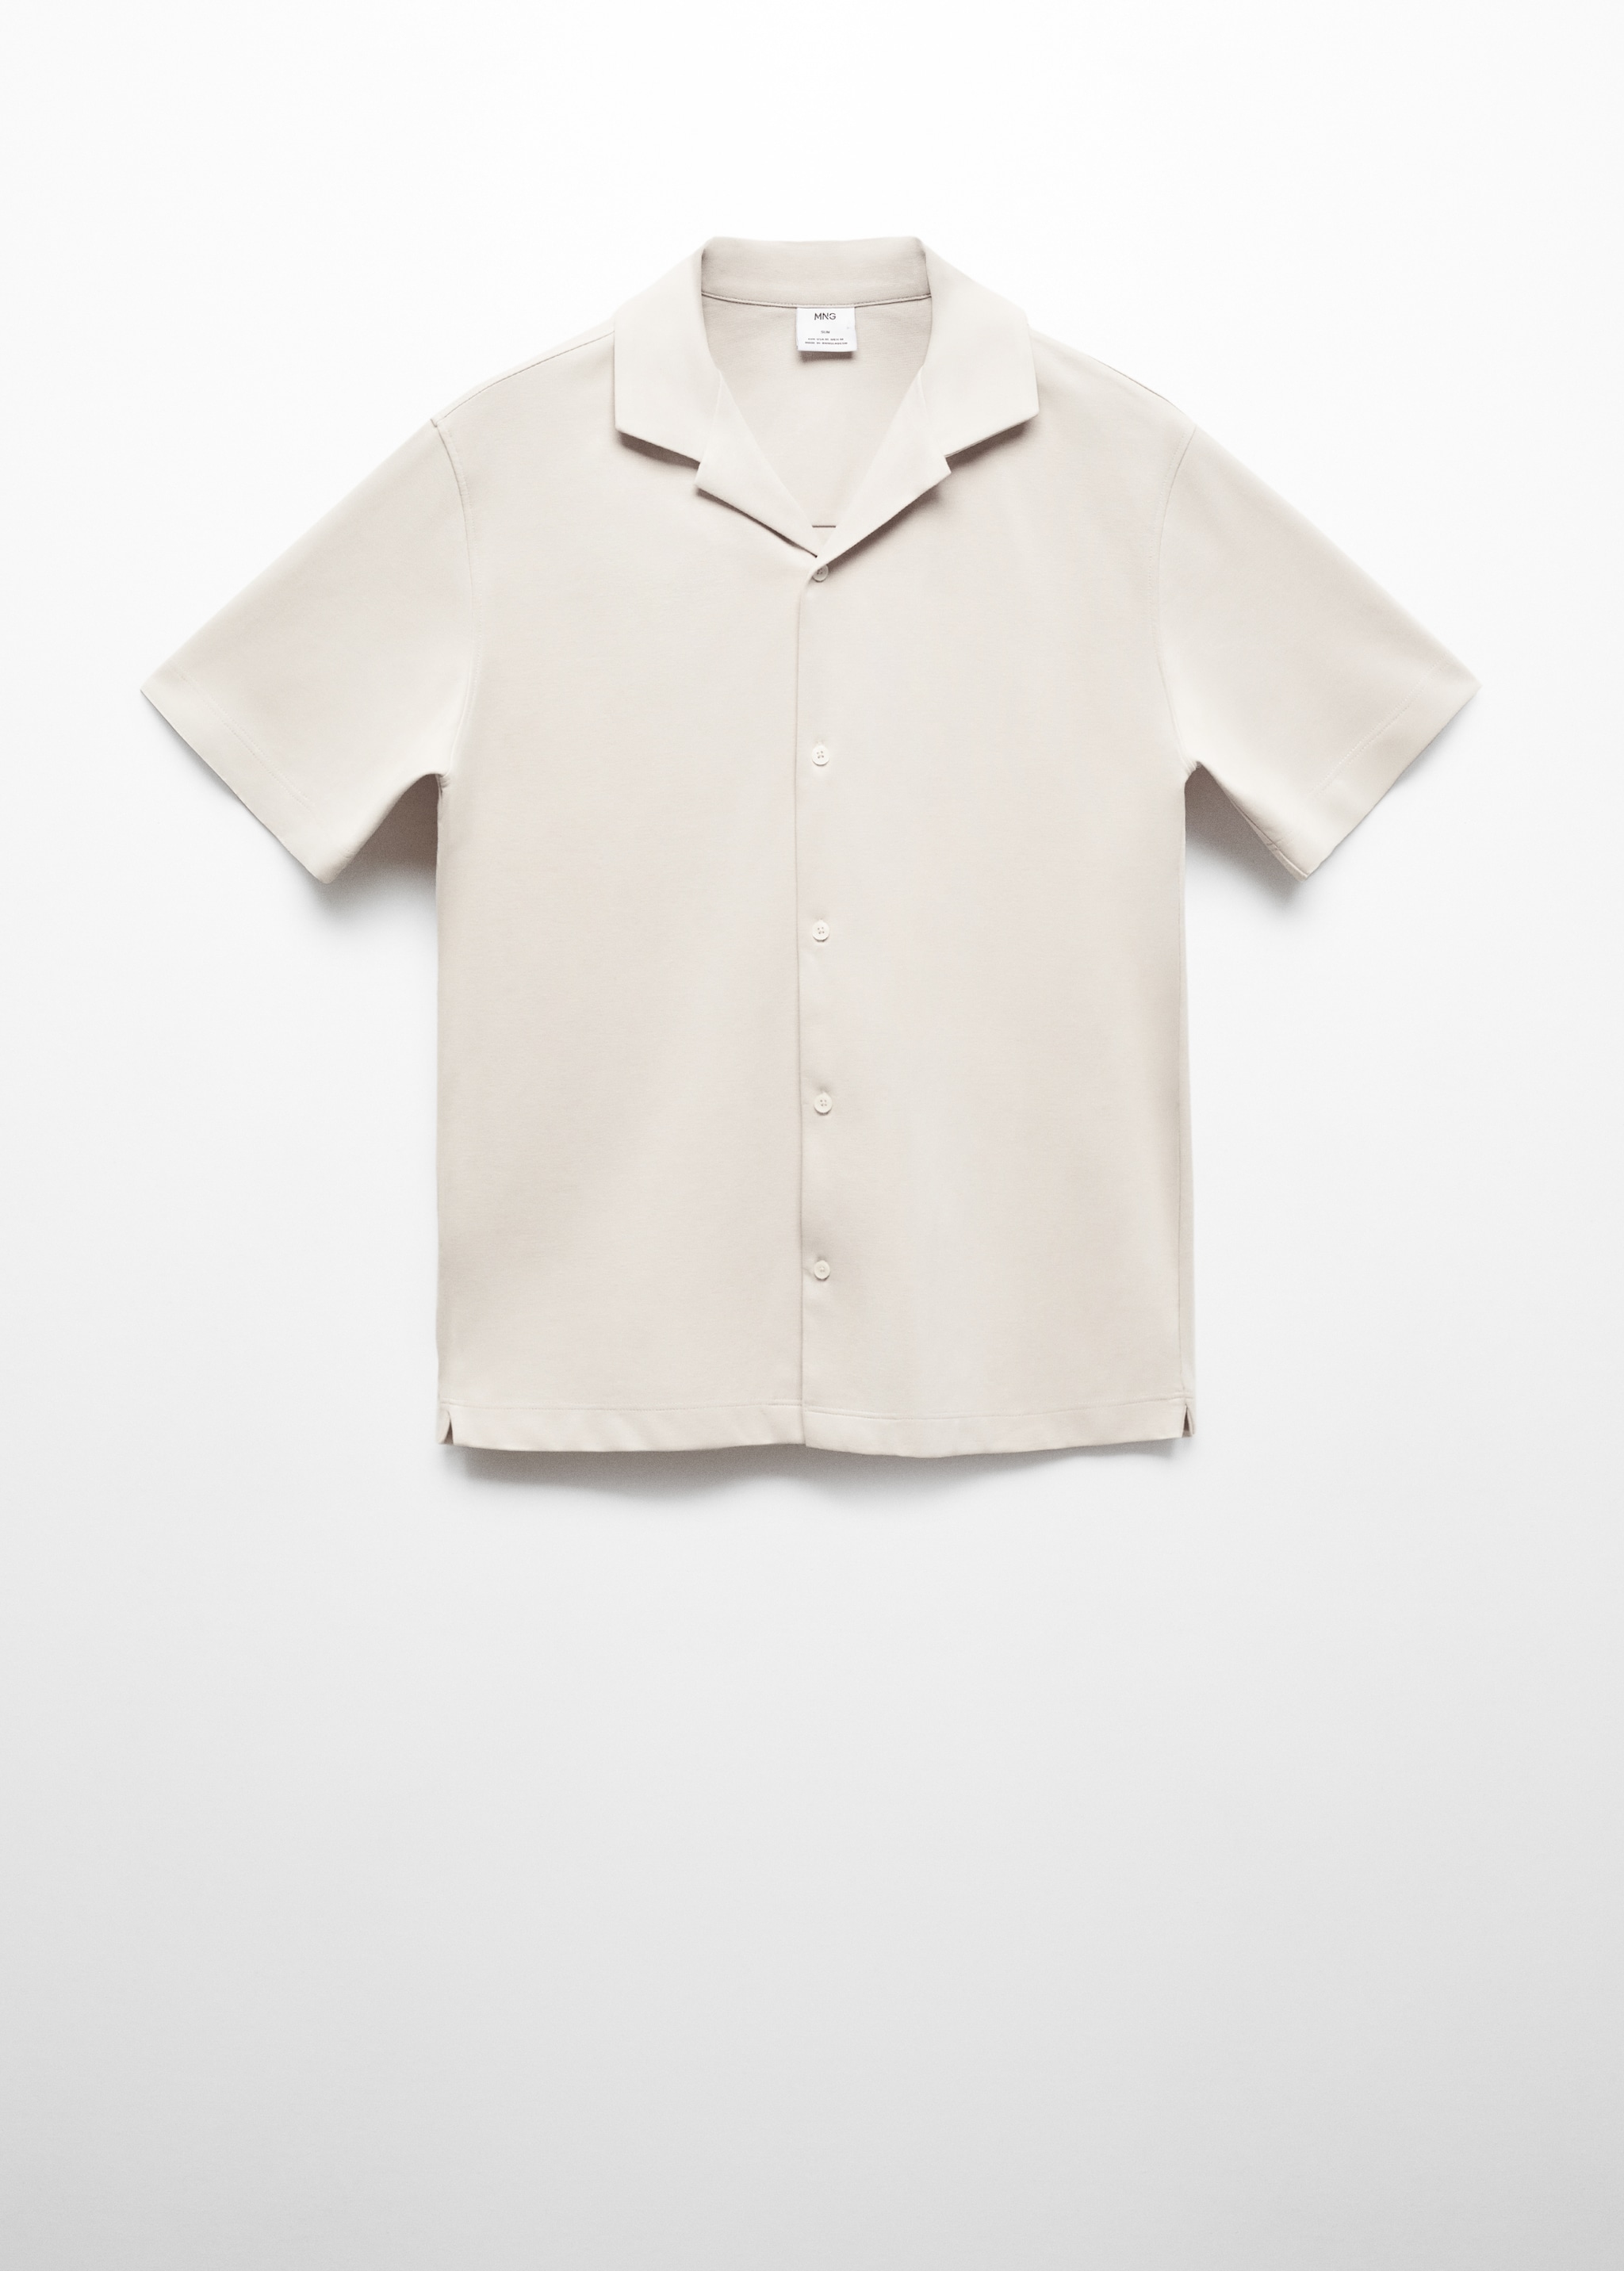 Хлопковая рубашка с короткими рукавами - Изделие без модели